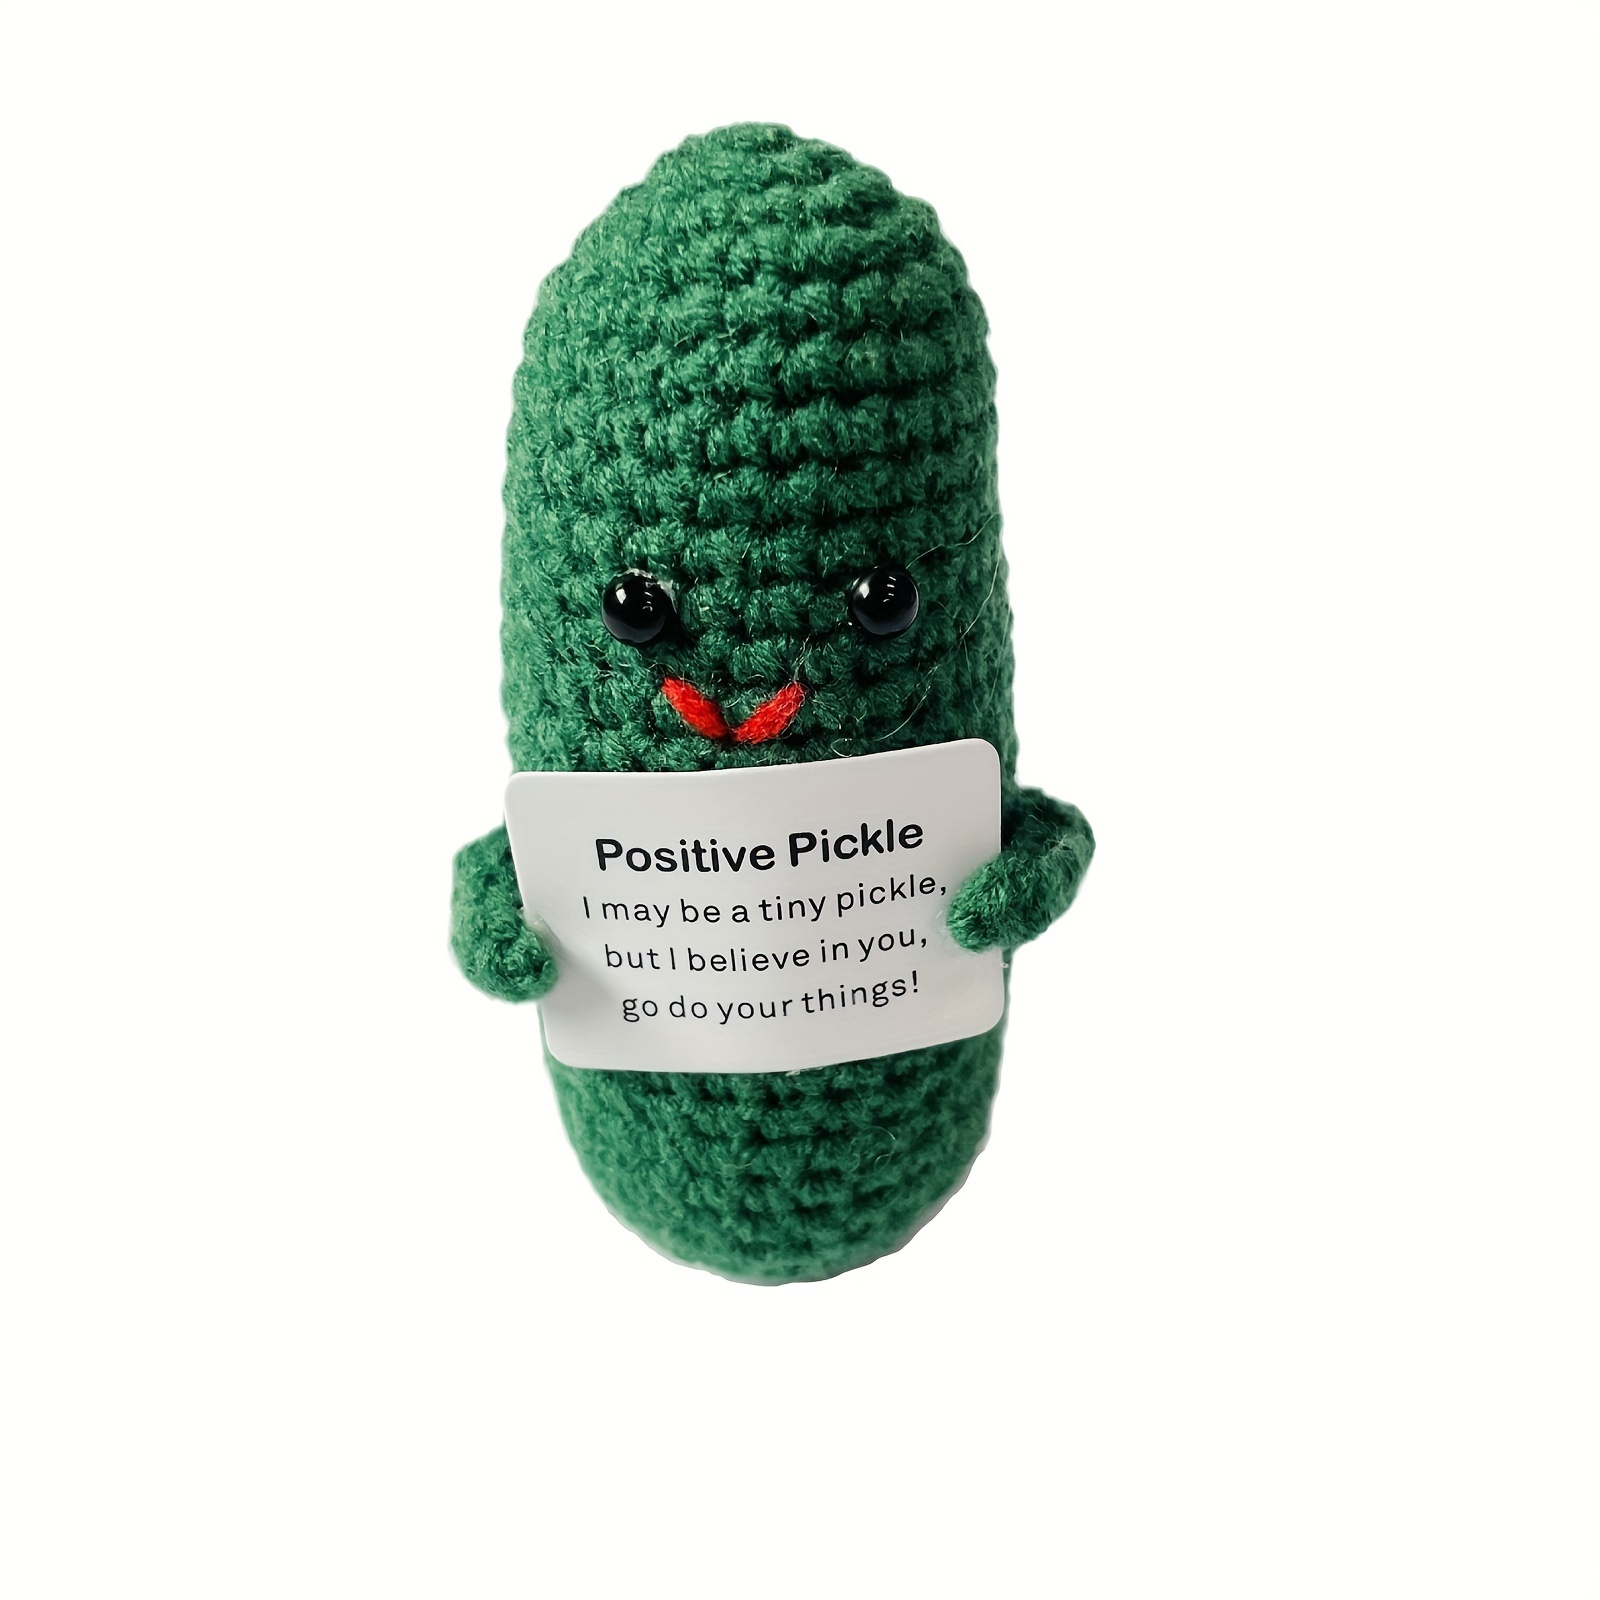 Positive Pickle – Pickle's Portraits